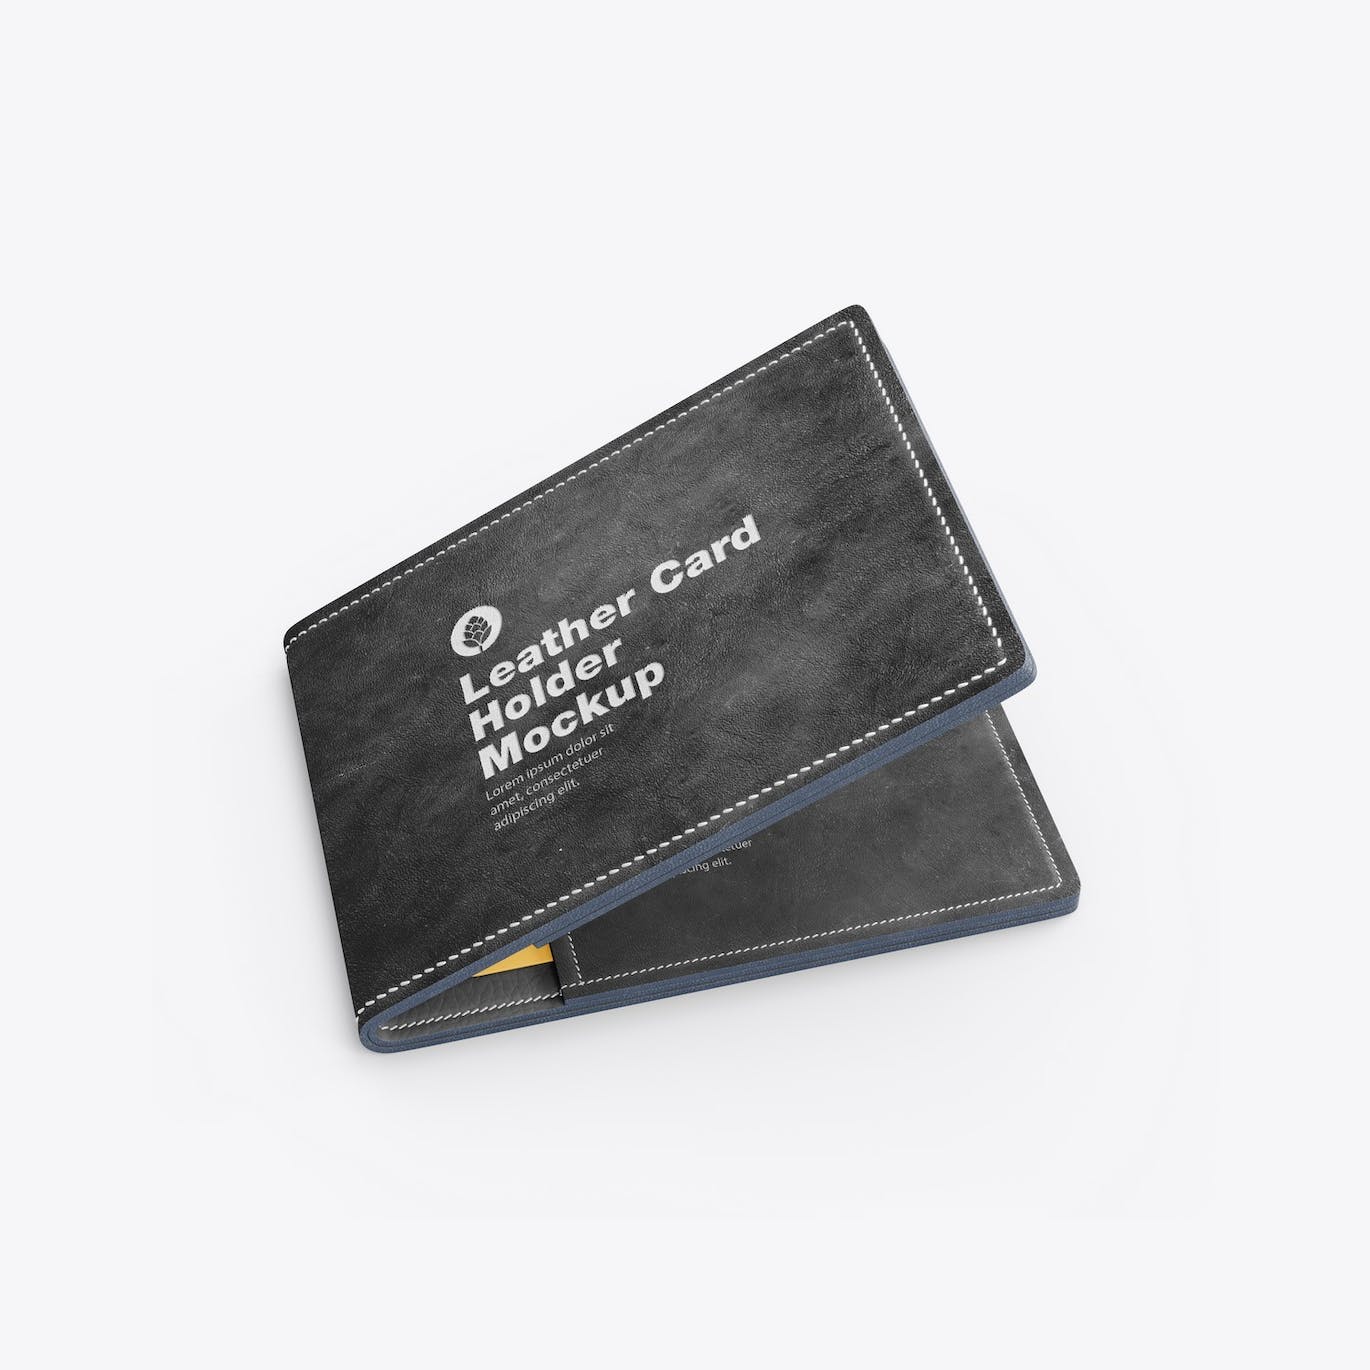 皮革卡片钱包夹设计样机模板 Leather Card Holder Mockup 样机素材 第8张